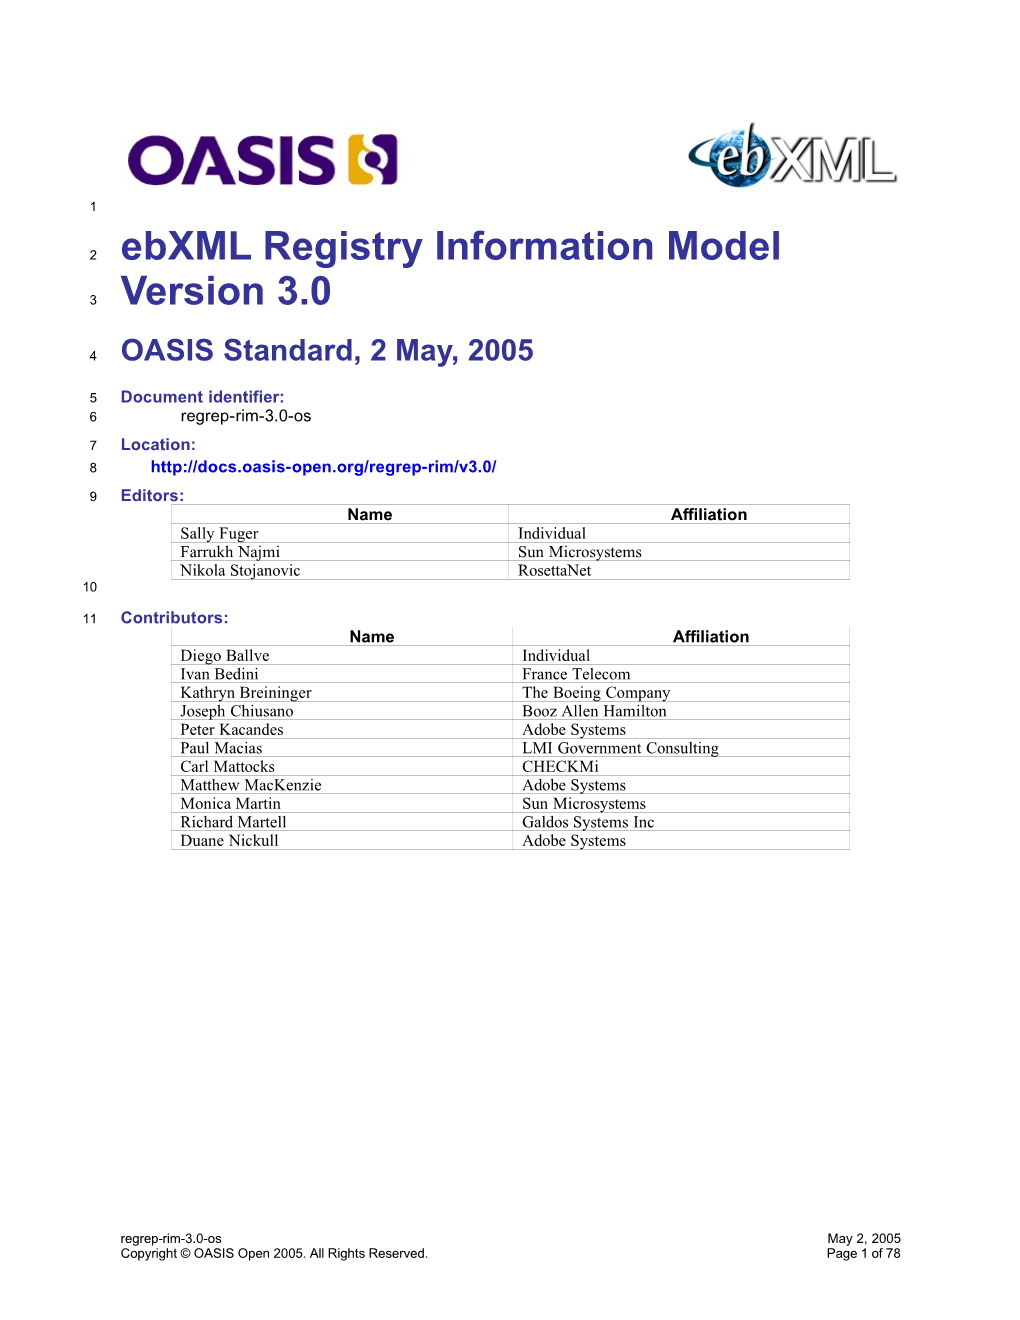 Ebxml Registry Information Model Version